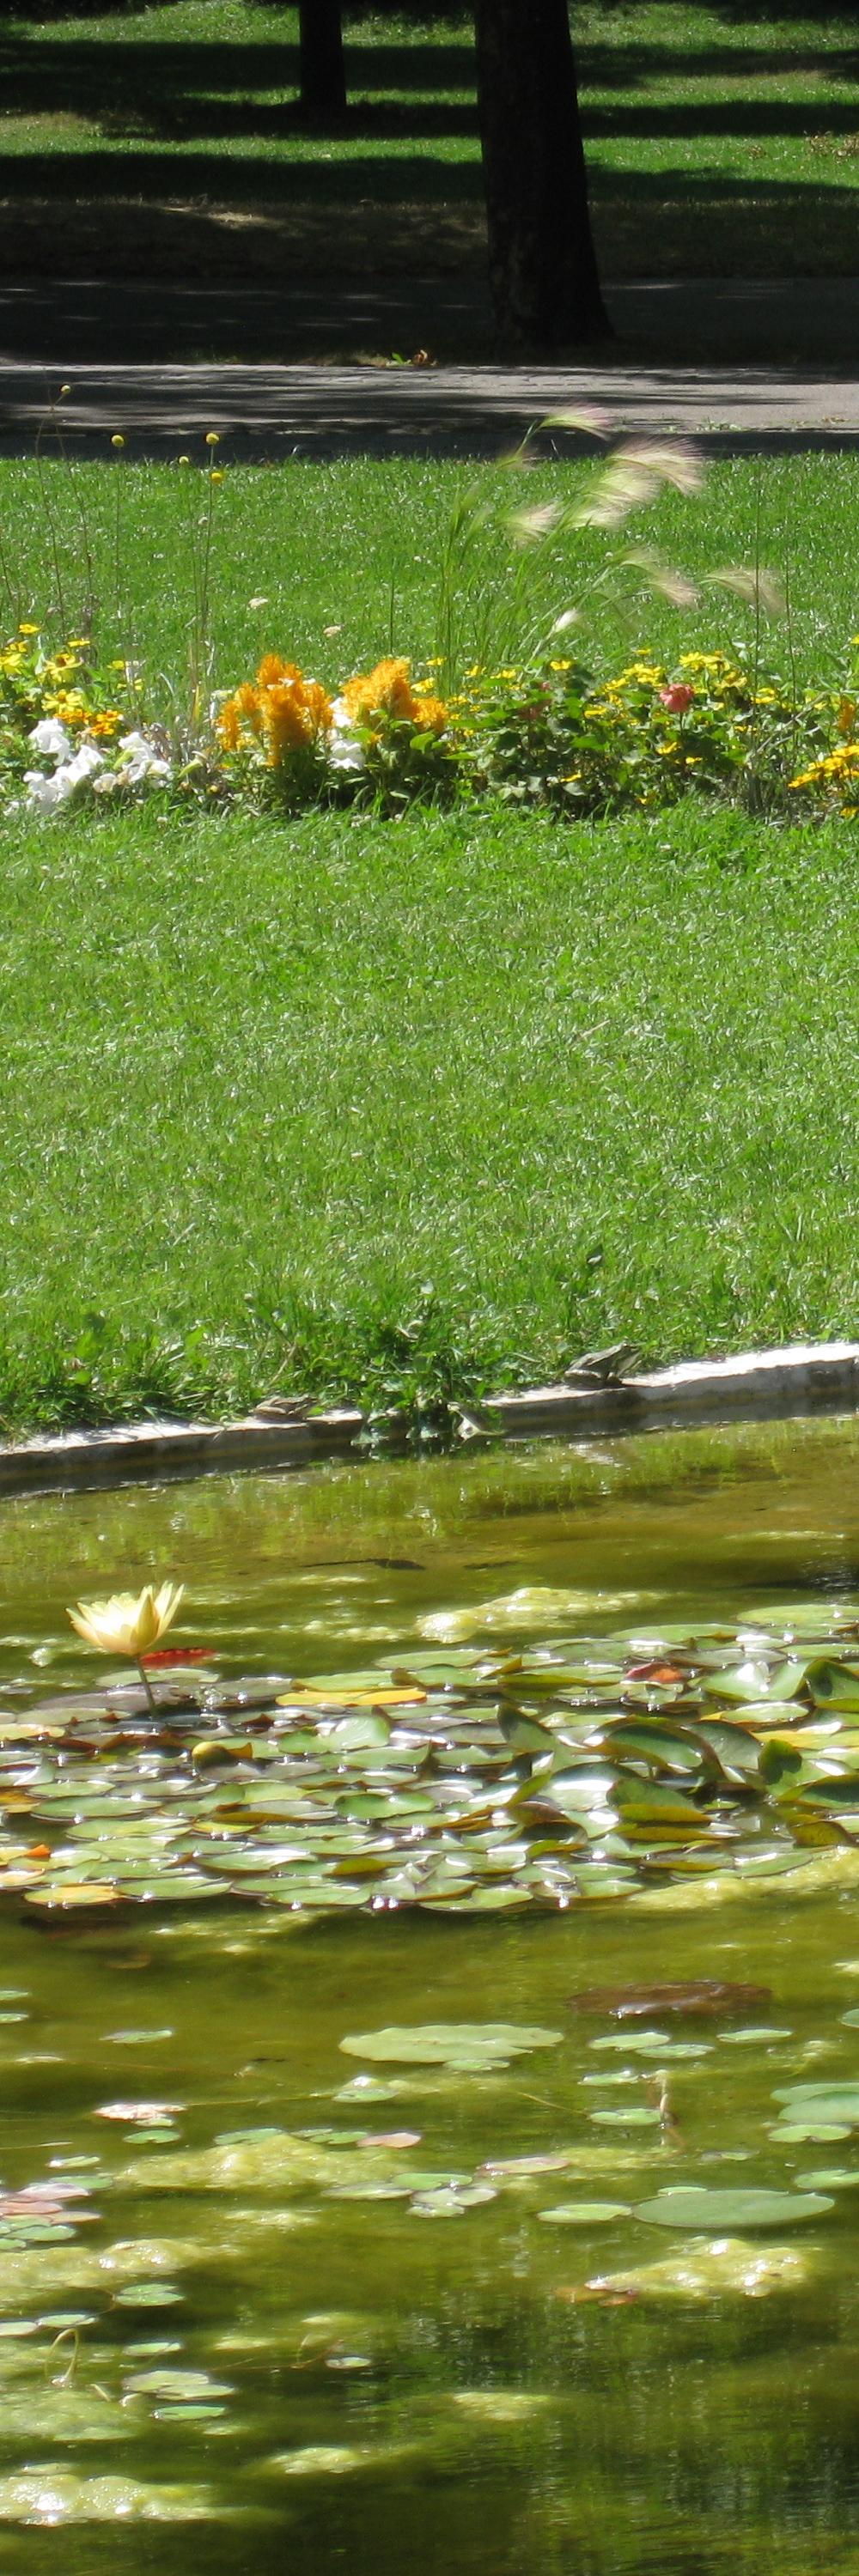 écoutez le chant des grenouilles en juin 2012, avant que les autoriés rebouchaient leur étang...